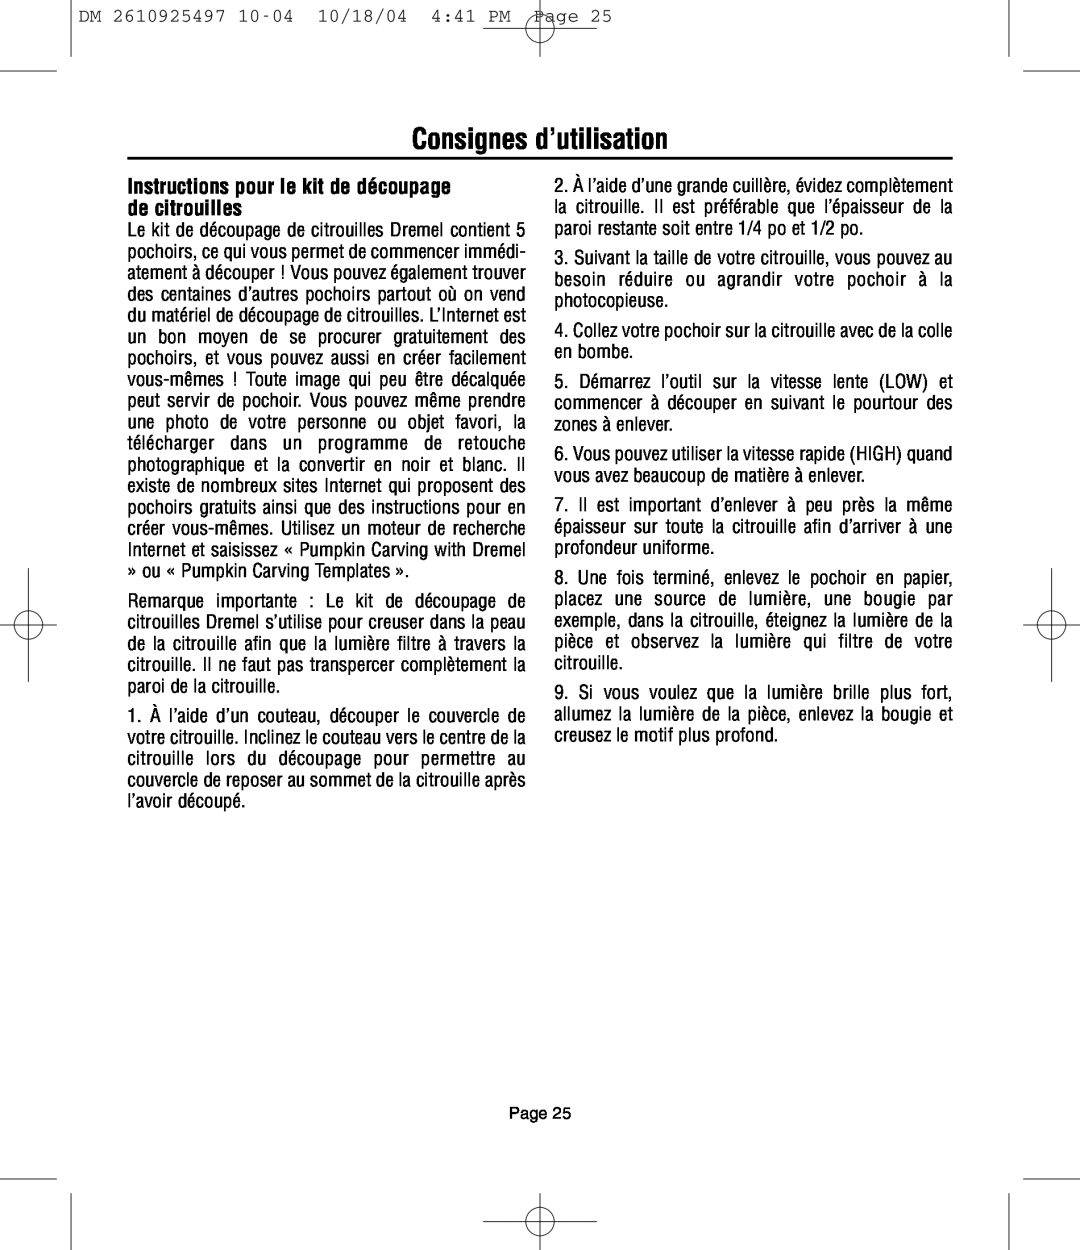 Dremel 764 owner manual Consignes d’utilisation, Instructions pour le kit de découpage de citrouilles 